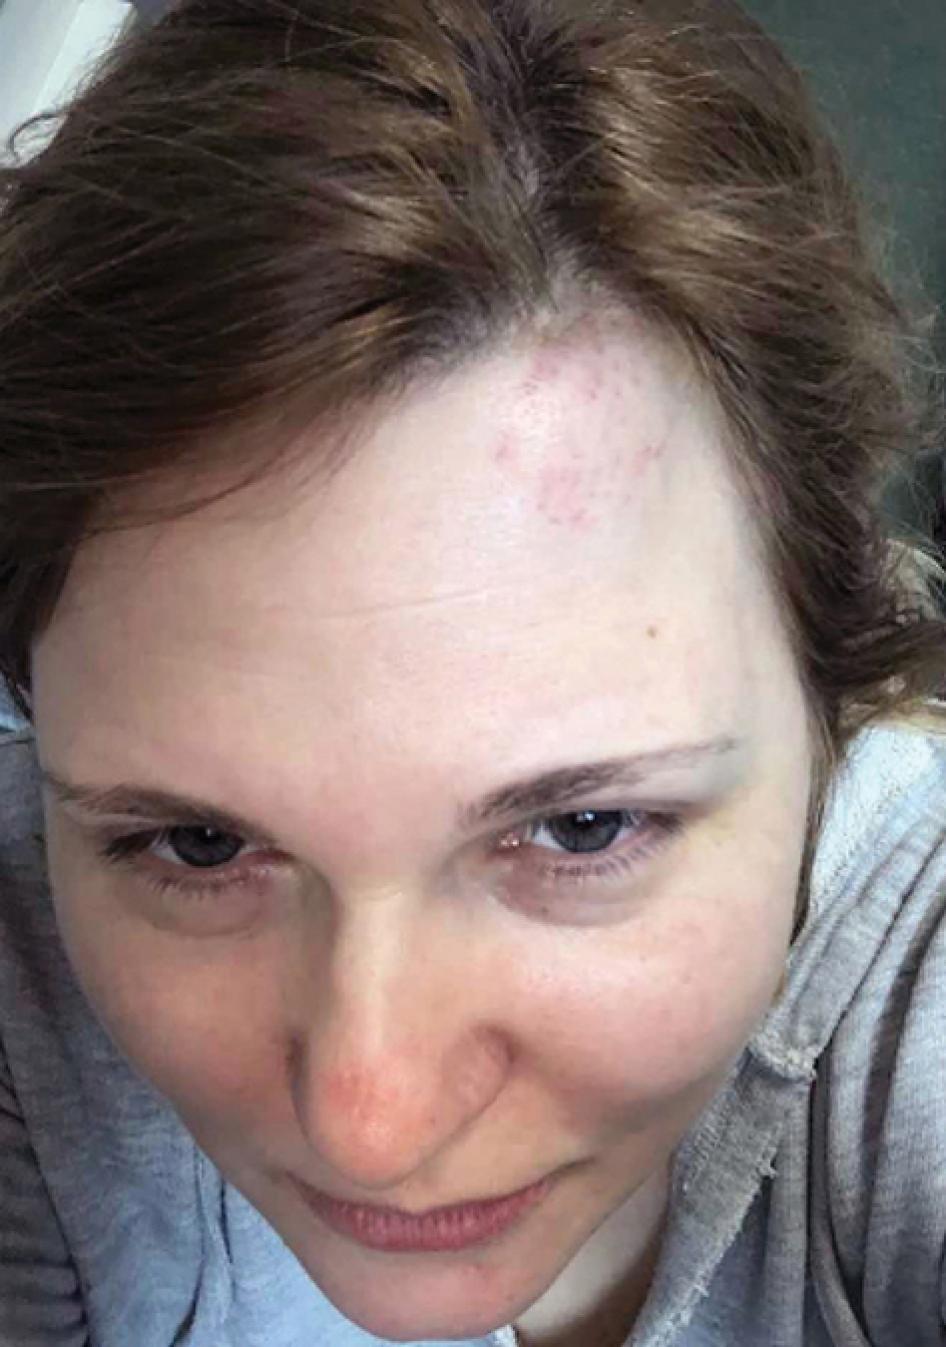 La journaliste russe Elena Milashina, collaboratrice de Novaya Gazeta, photographiée après avoir été agressée à Grozny, en Tchétchénie, en février 2020.